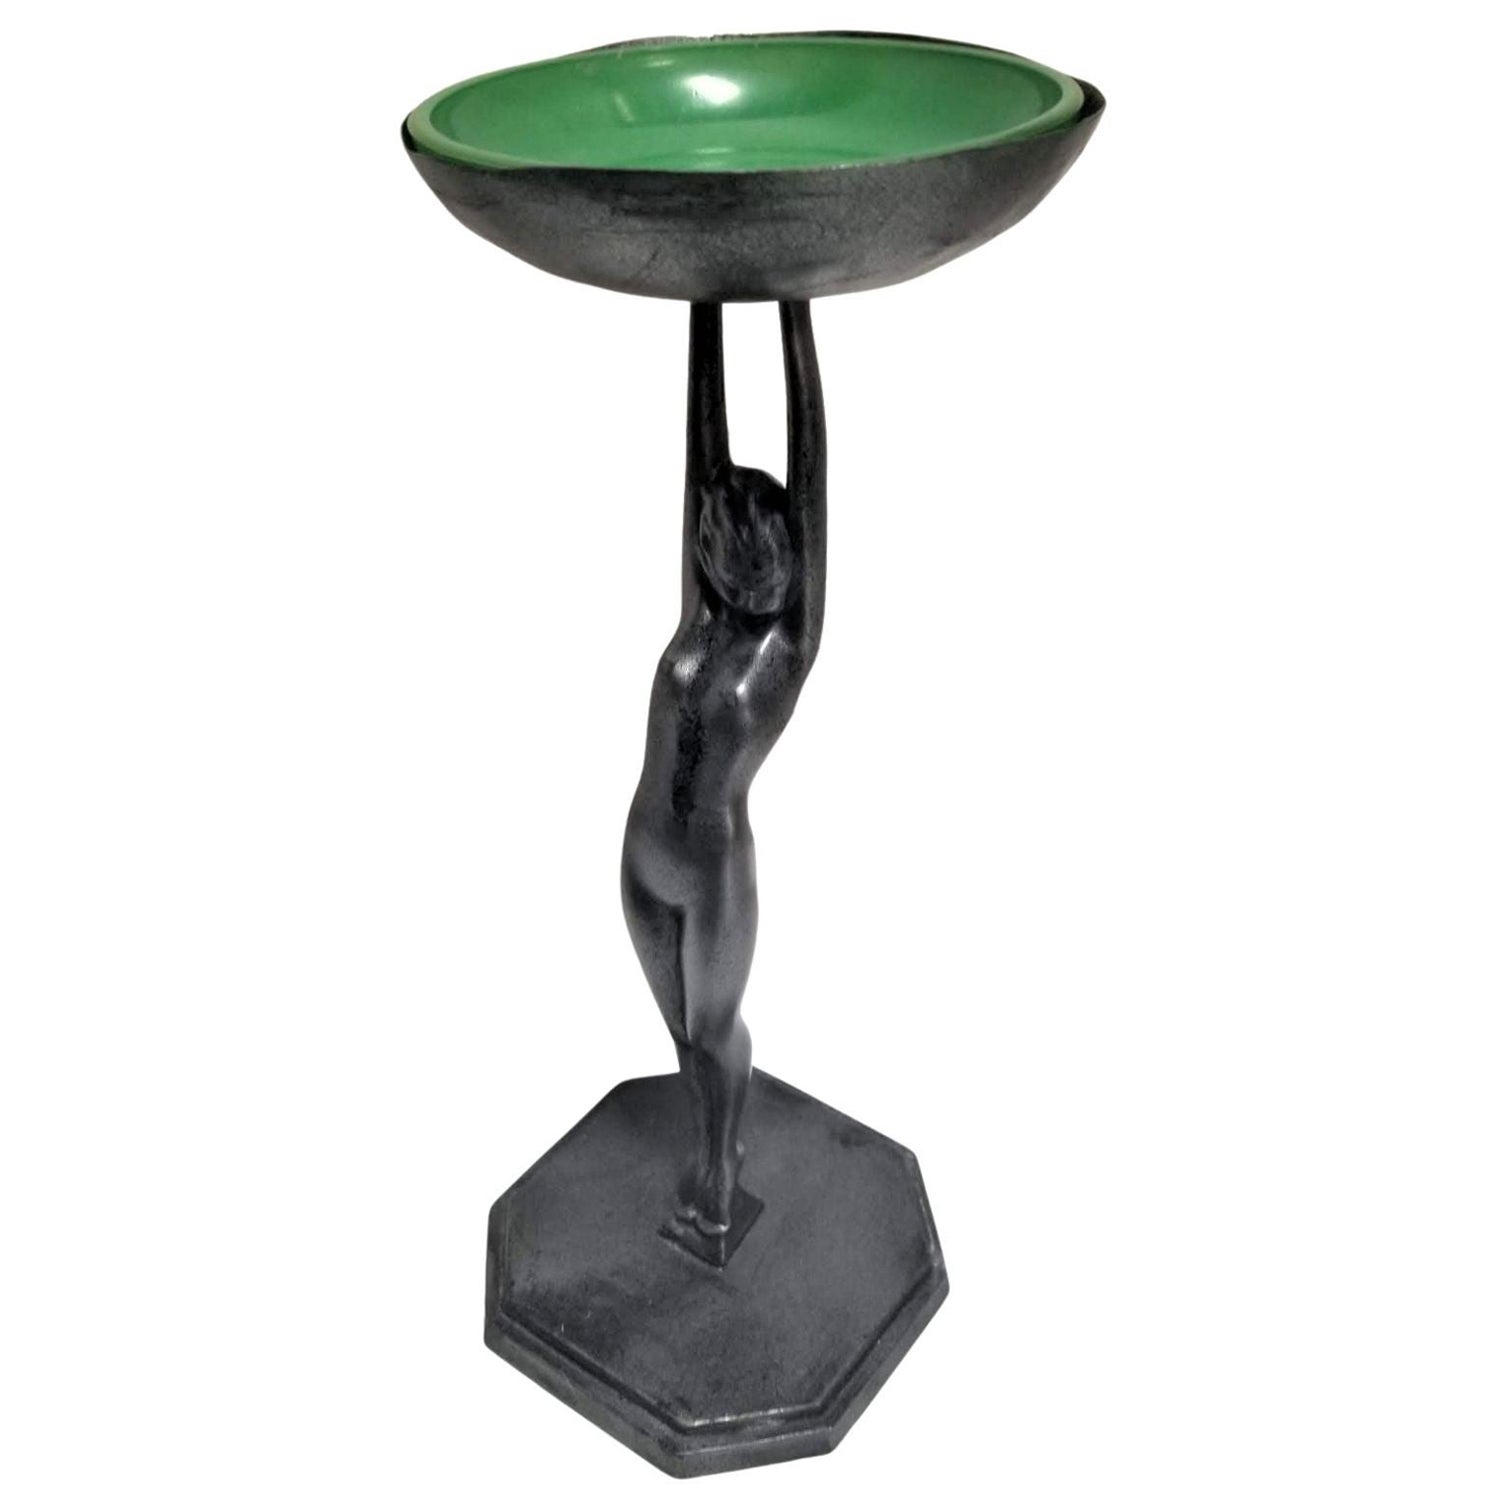 Cendrier Frankart n° 210 avec plateau de table pour femme nue et bol en verre vert